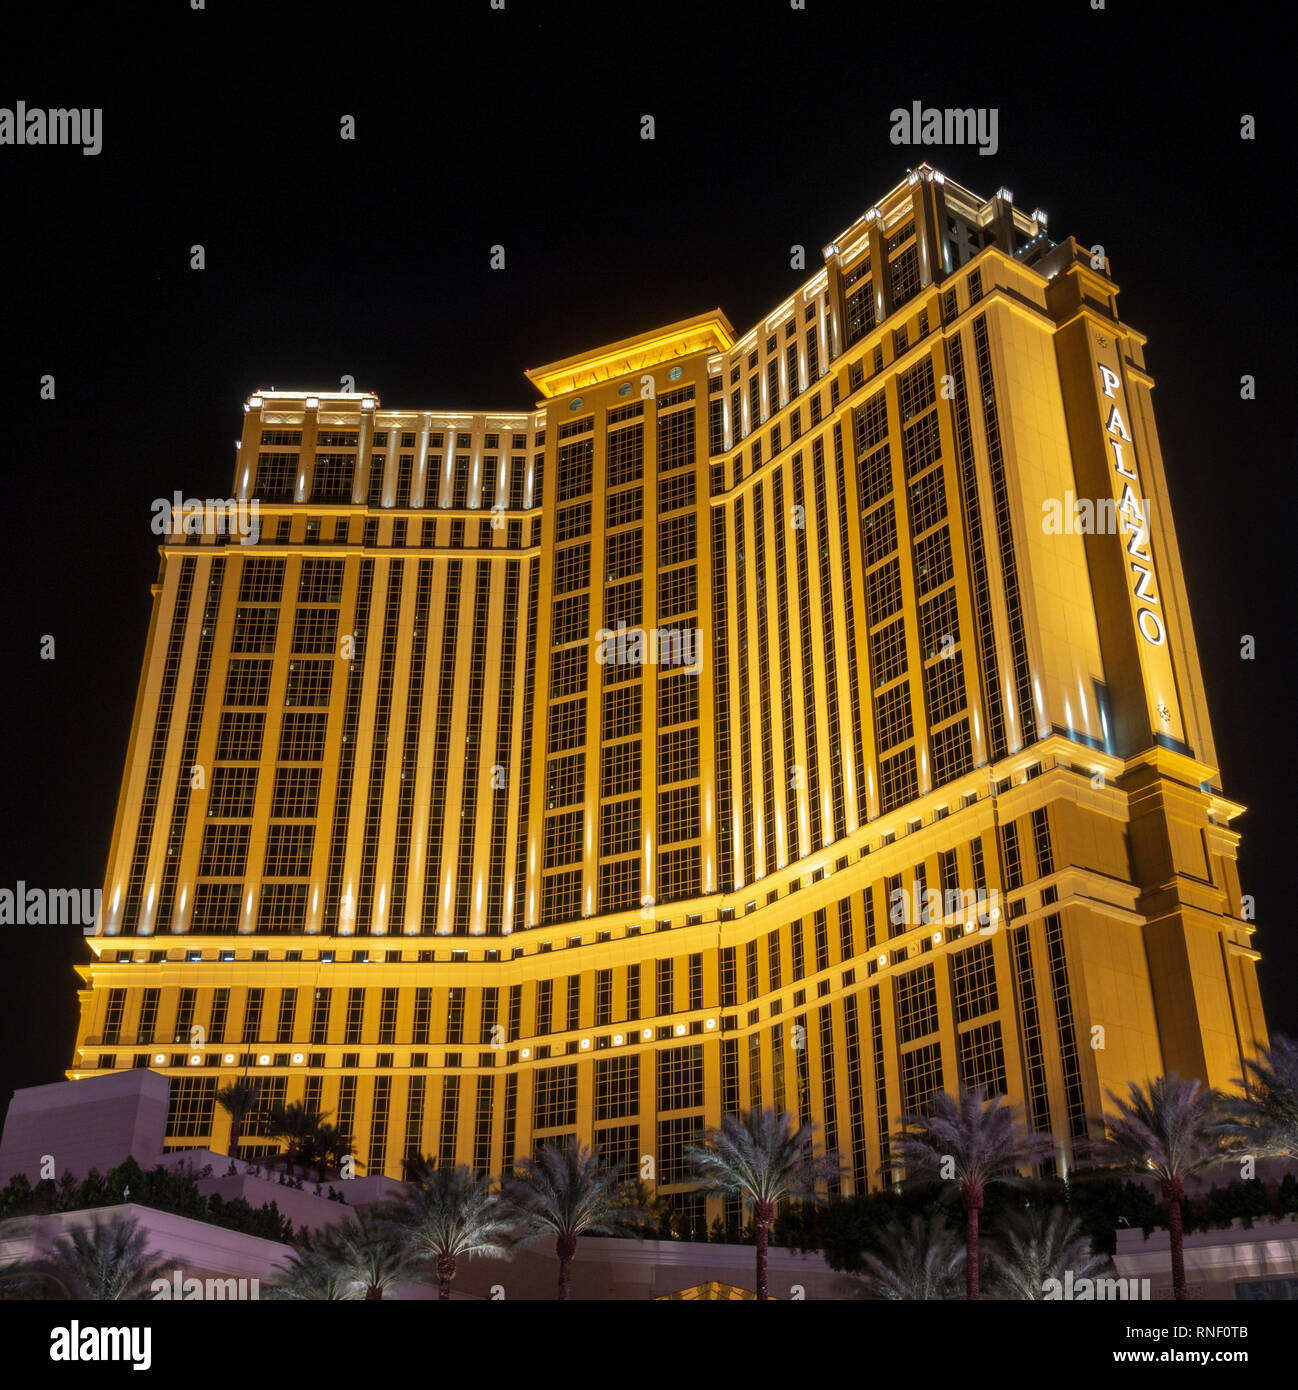 The Palazzo Casino Las Vegas at night, The Strip, Las Vegas, Nevada, United States. Stock Photo